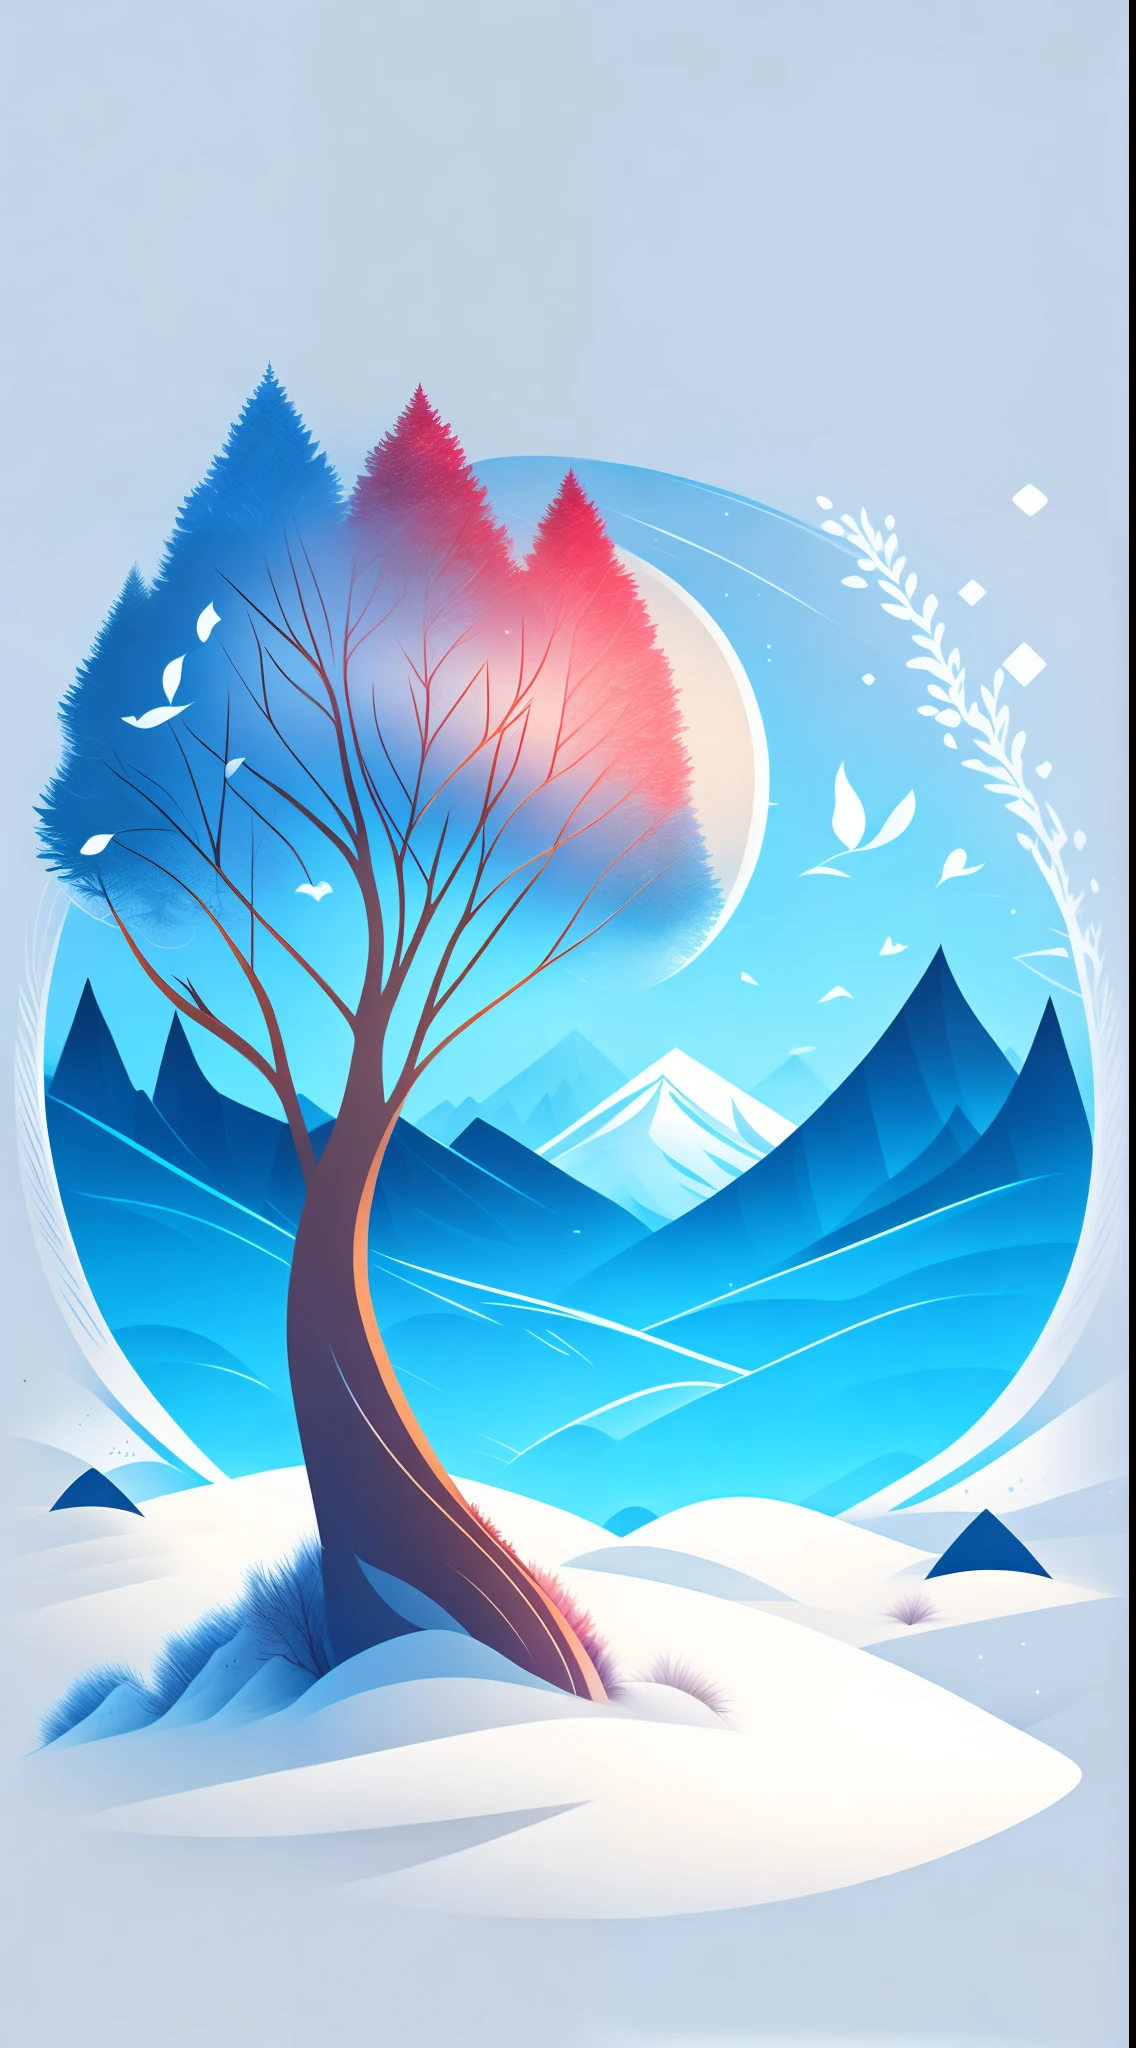 冬季風景中的一棵雲杉樹, T 卹設計, 羅茲明之旅, 向量藝術